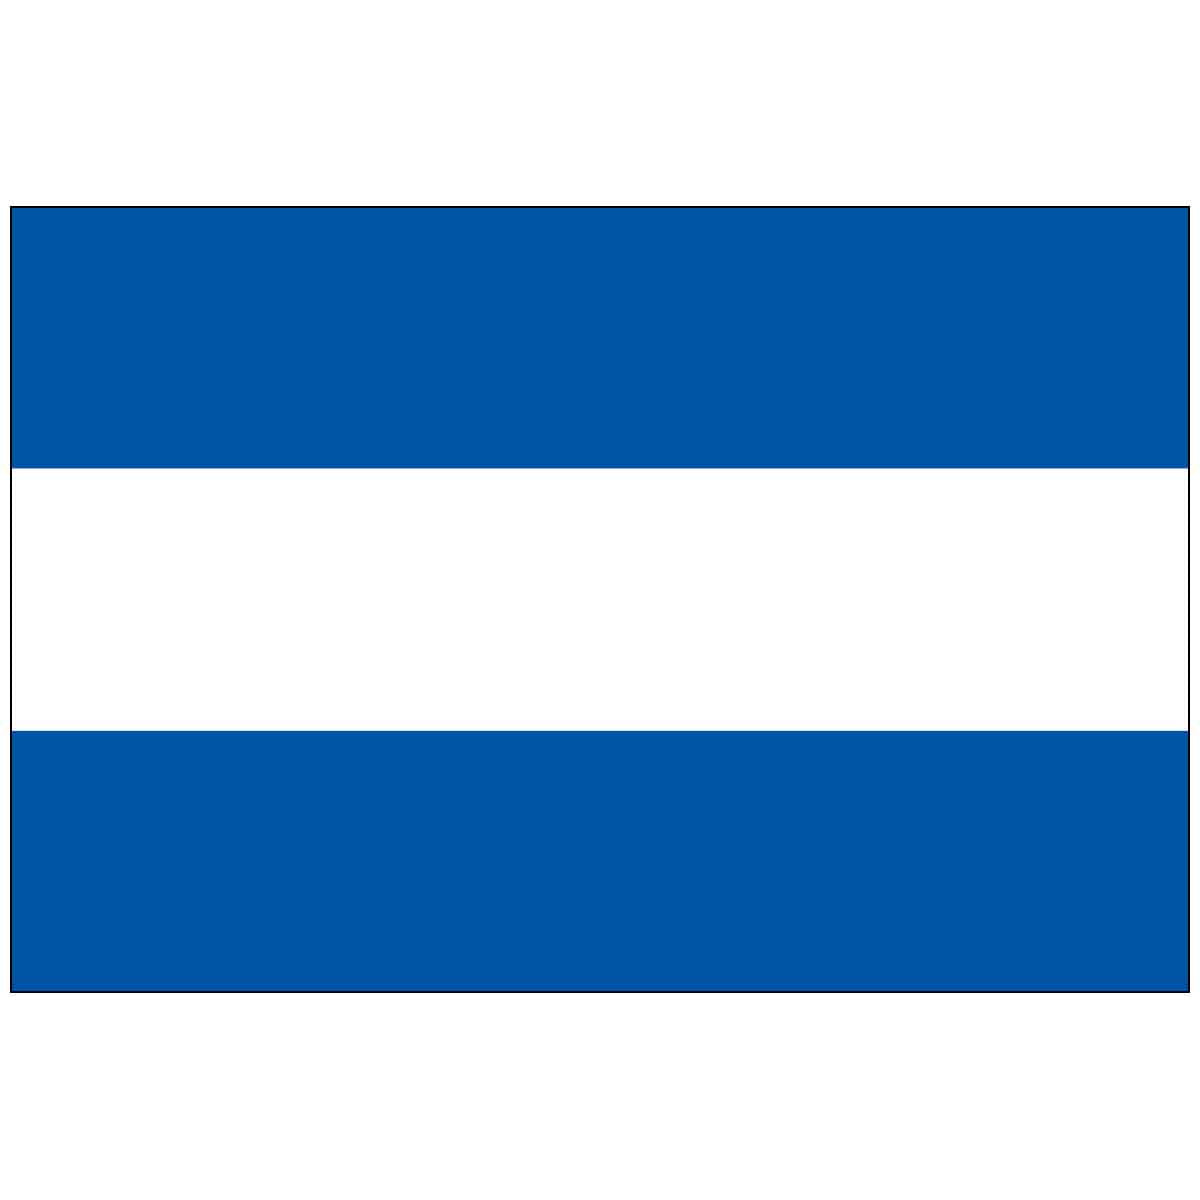 Nicaragua (no Seal) World Flag